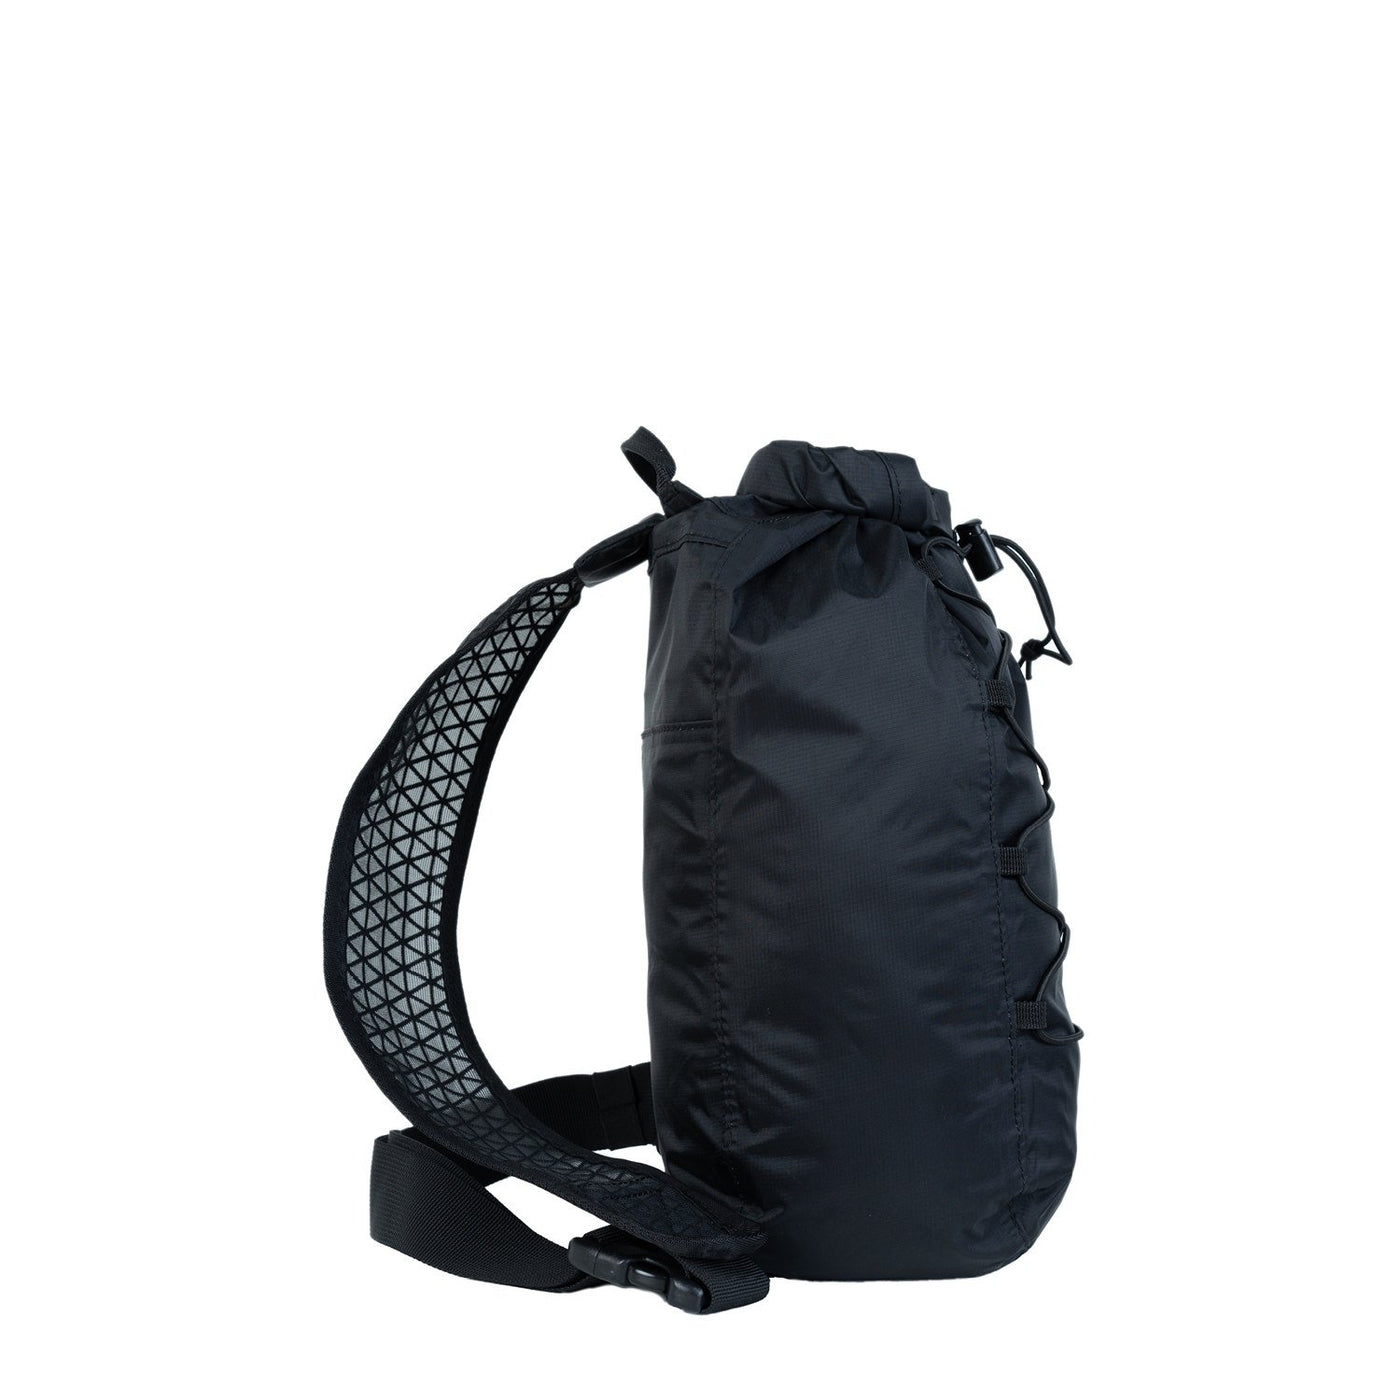 ADV Dry Waterproof Bag - 11L Absolute Black